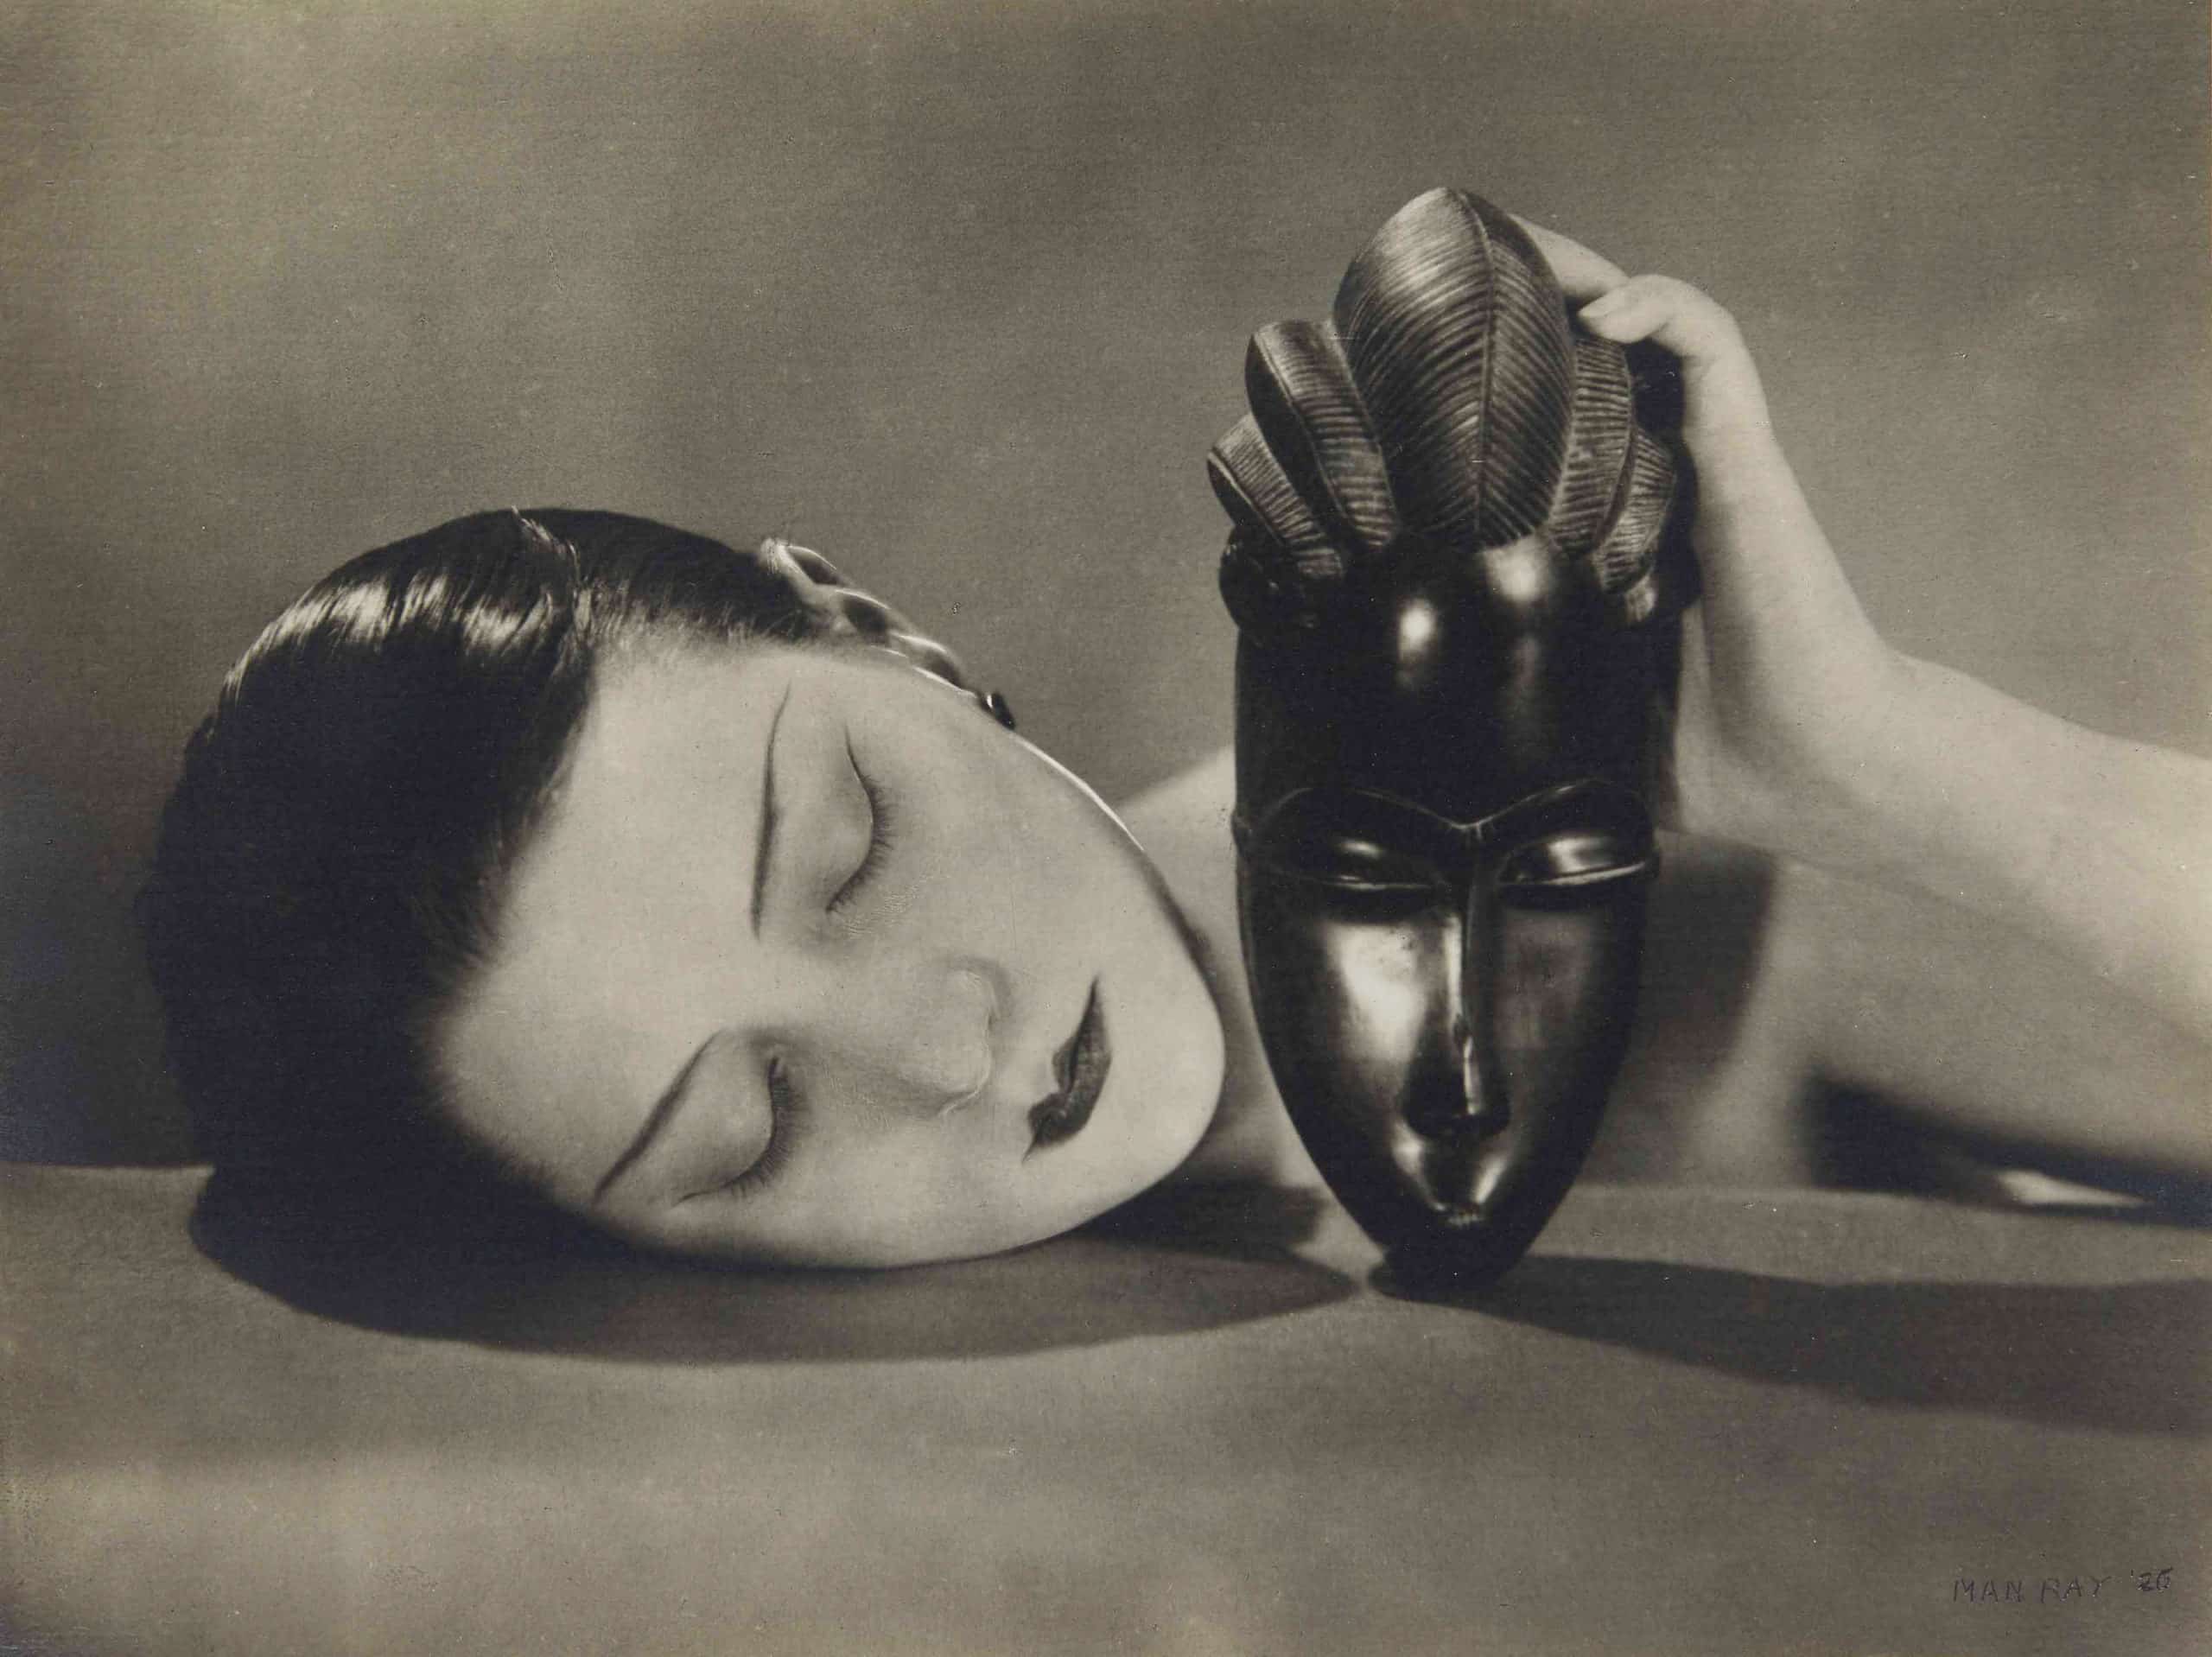 Noire et Blanche von Man Ray, 1926, Silbergelatineabzug, 6 7/8 x 8¼ Zoll (17,5 x 21 cm). Dieses Foto wurde in der Maiausgabe 1926 der französischen Vogue veröffentlicht, begleitet von der eleganten Beschreibung „Perlmuttgesicht und Ebenholzmaske“.